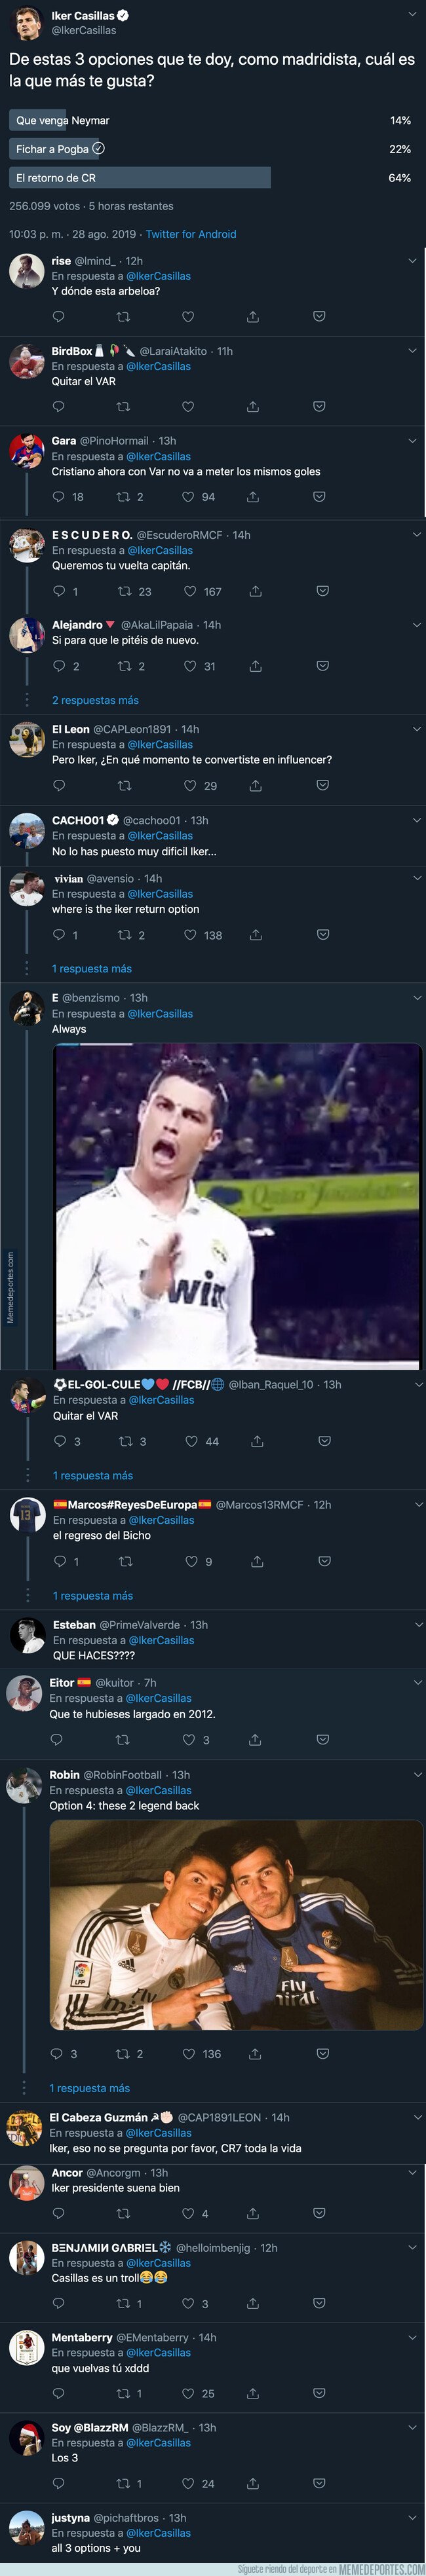 1084450 - Iker Casillas hace una pregunta en Twitter con 3 respuestas y el madridismo responde de forma unánime